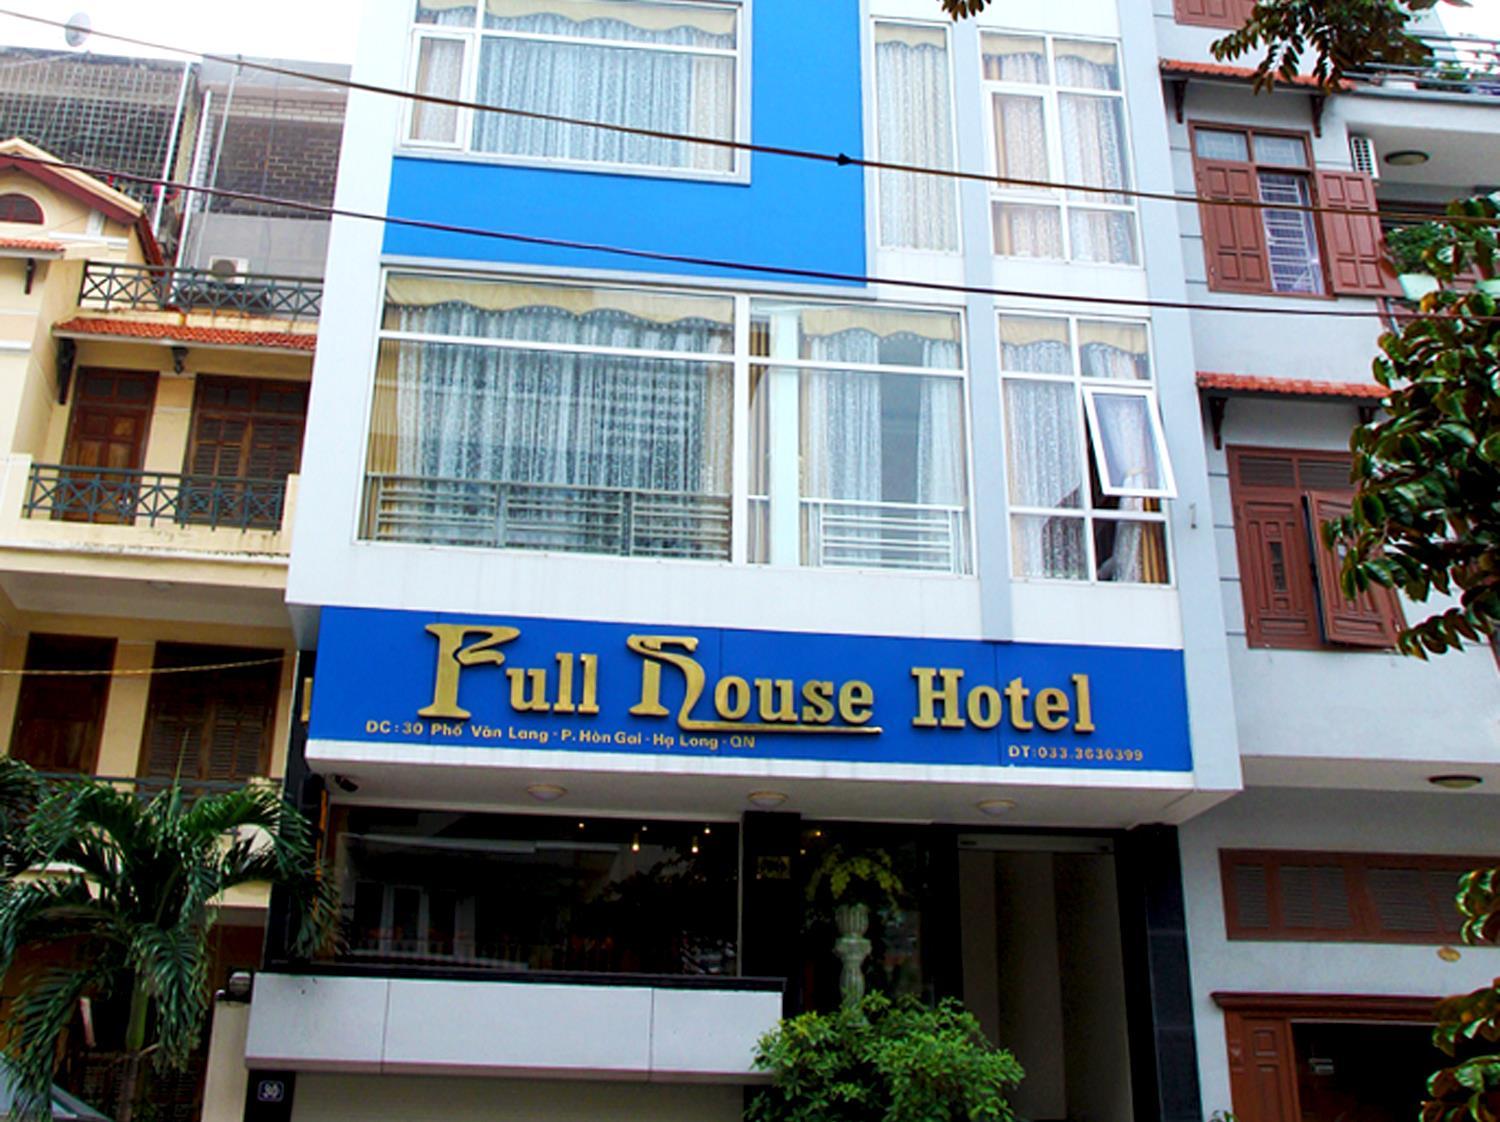 Fullhouse Hotel, Ha Long booking